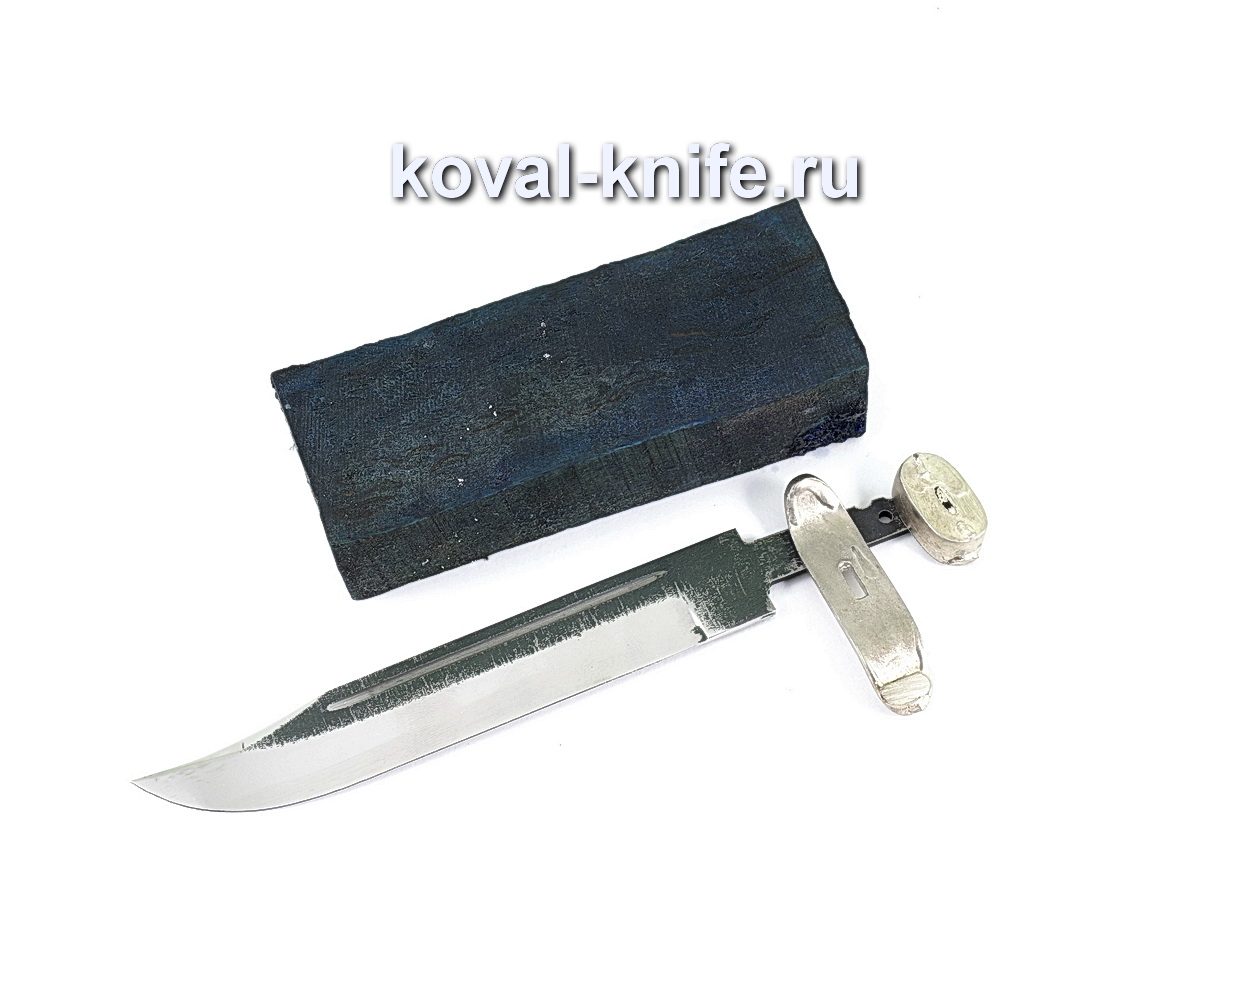 Комплект для ножа НР-40 6 (клинок кованая 110х18 3,5мм, литье 2шт., граб брусок)